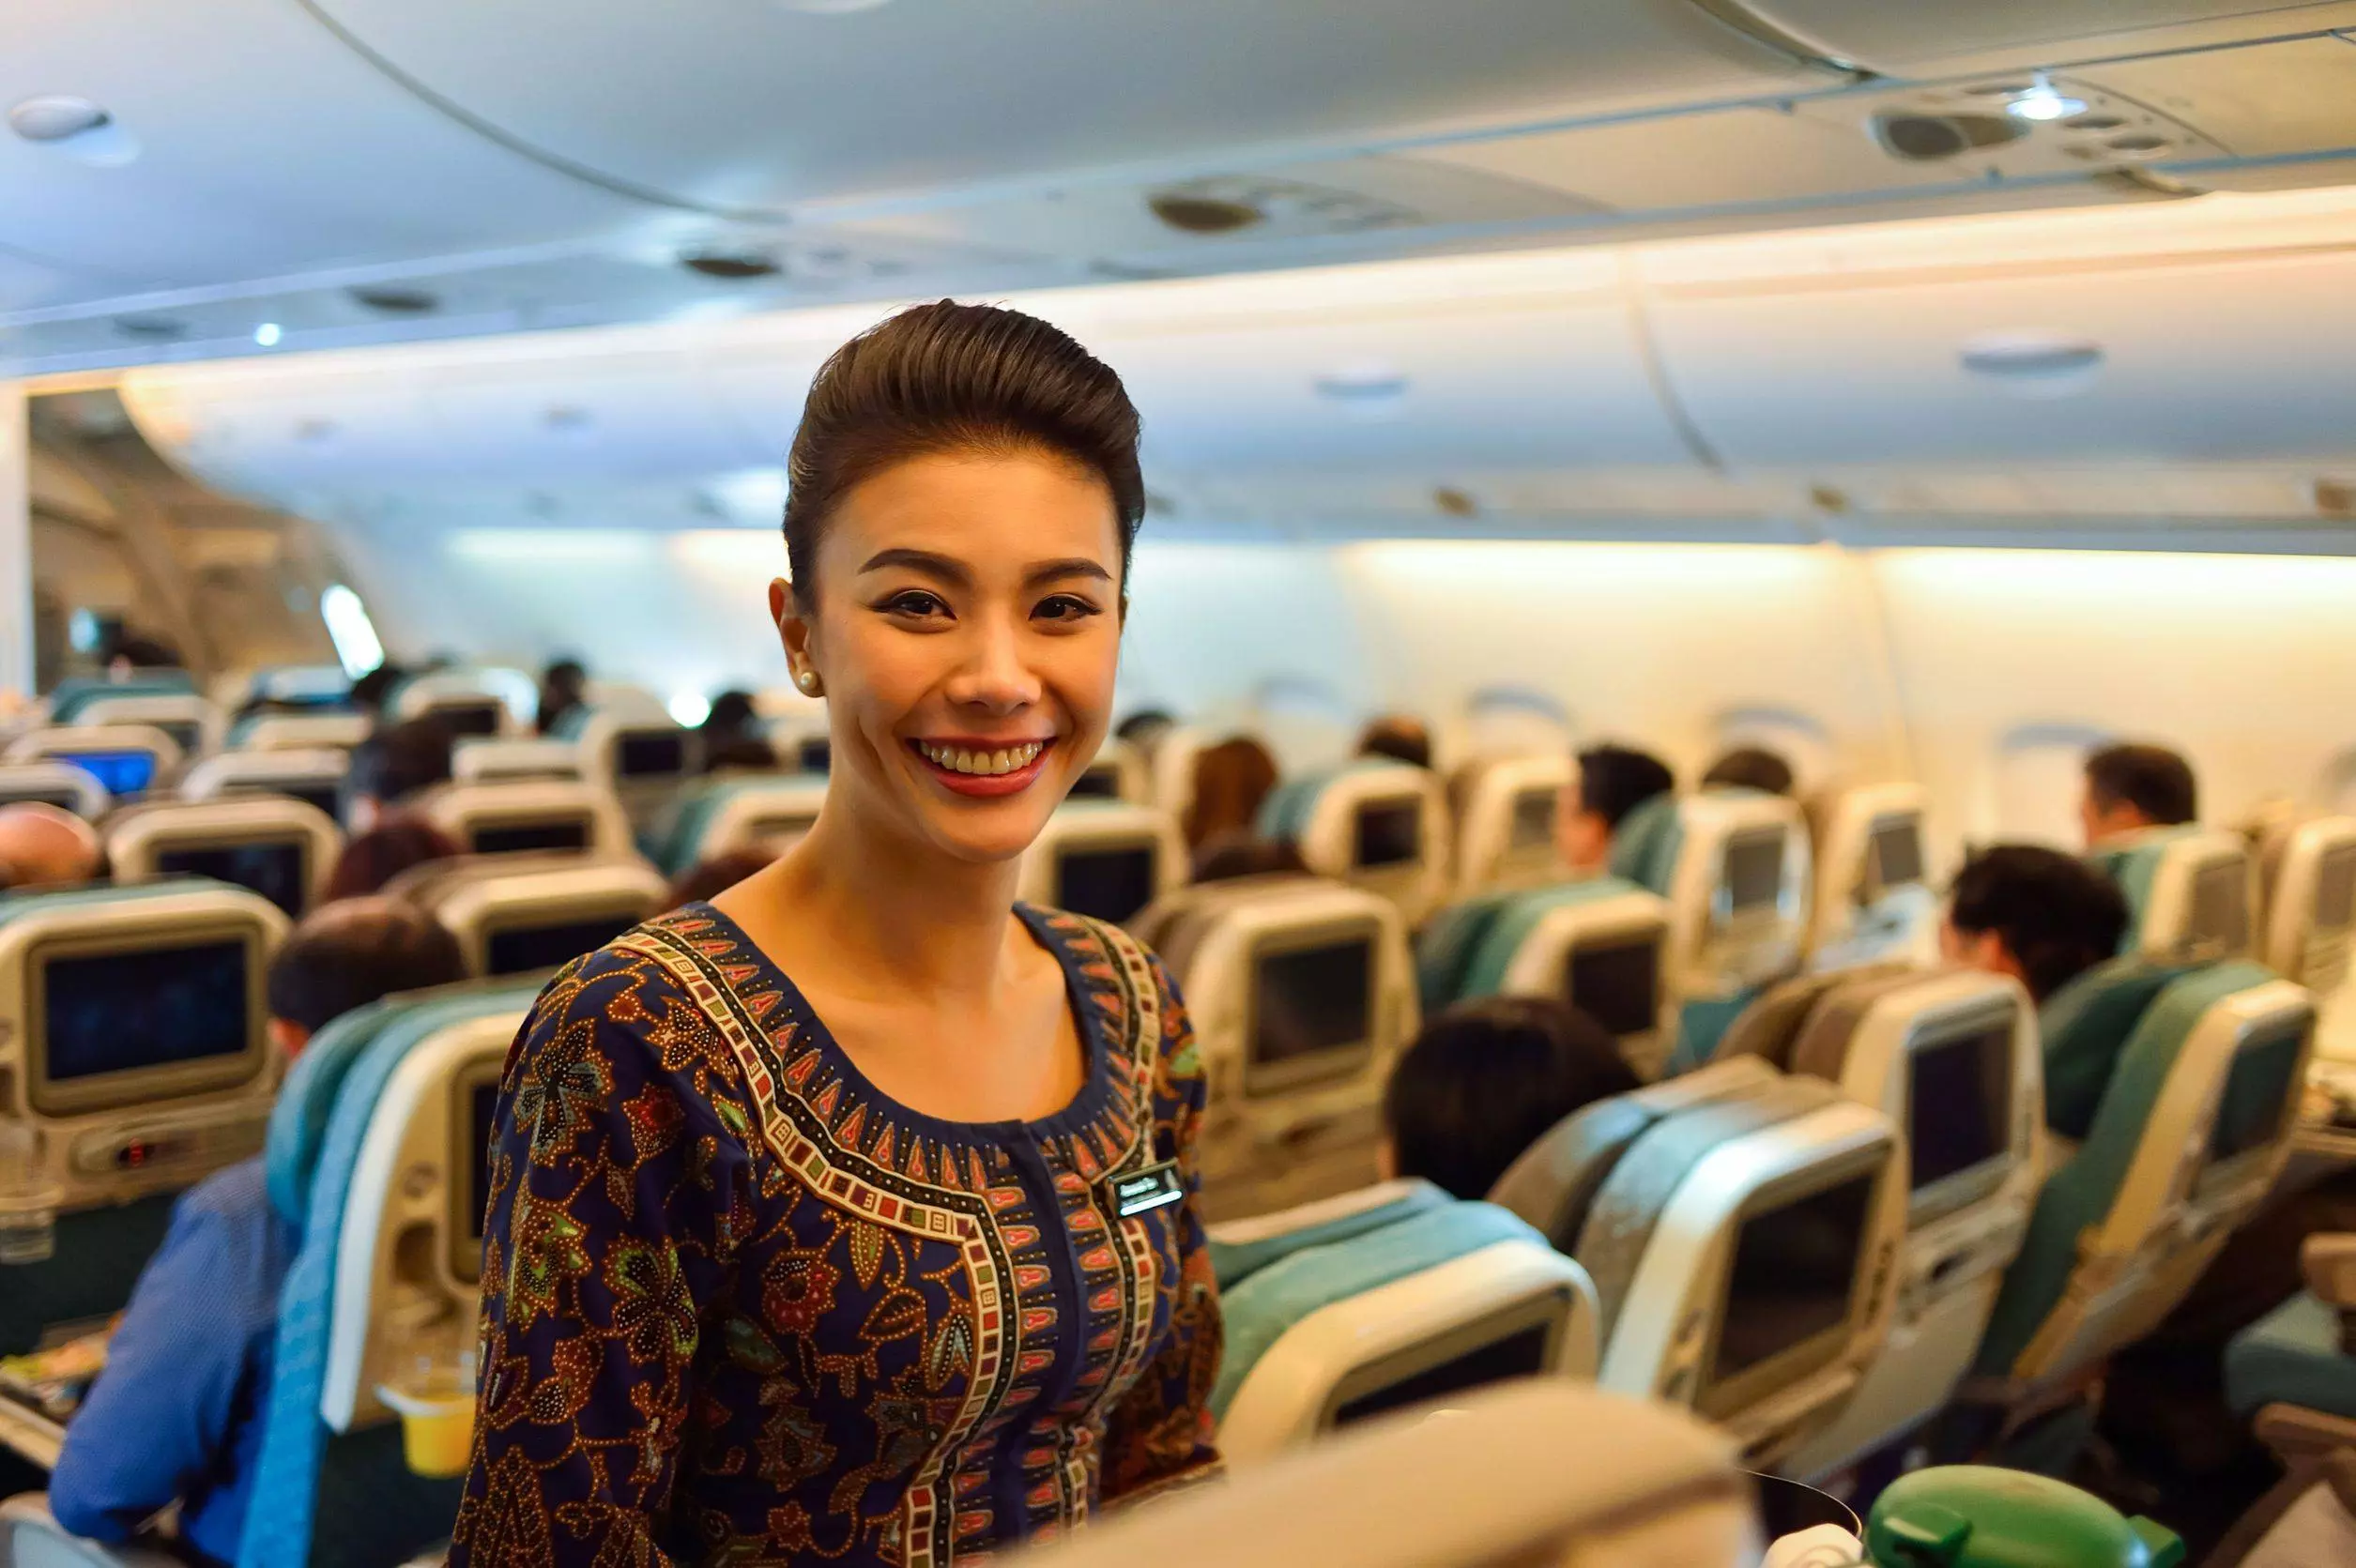 Сингапурские авиалинии авиакомпания - официальный сайт singapore airlines, контакты, авиабилеты и расписание рейсов  2022